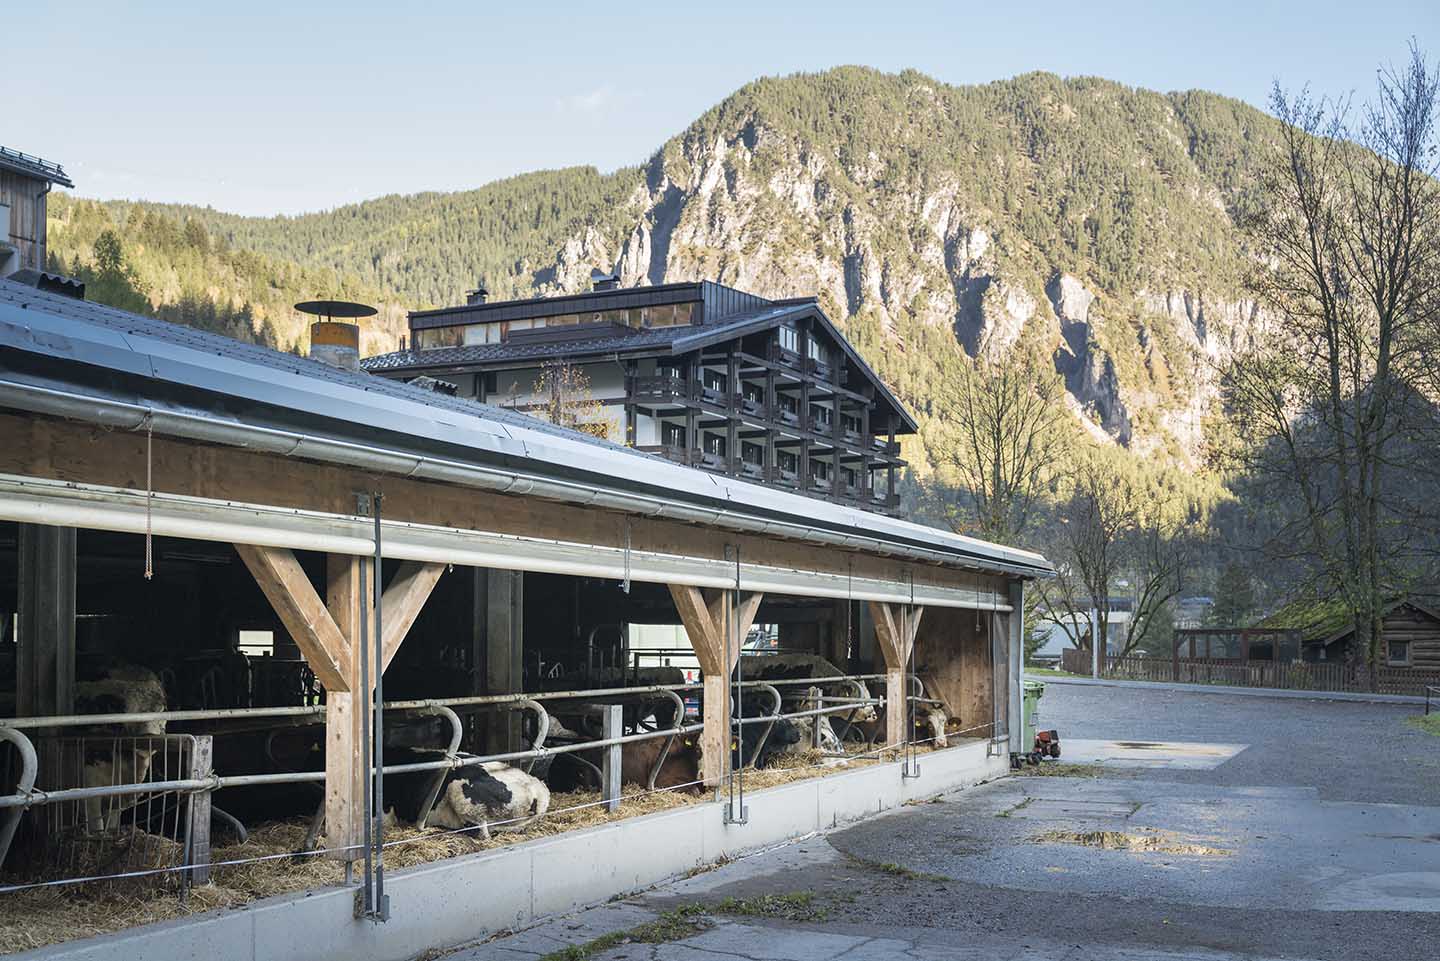 Im Vordergrund Ist Ein Ausschnitt Des Stalles Mit Rindern Zusehen. Im Hintergrund Das Sporthotel Der Familie Beck.